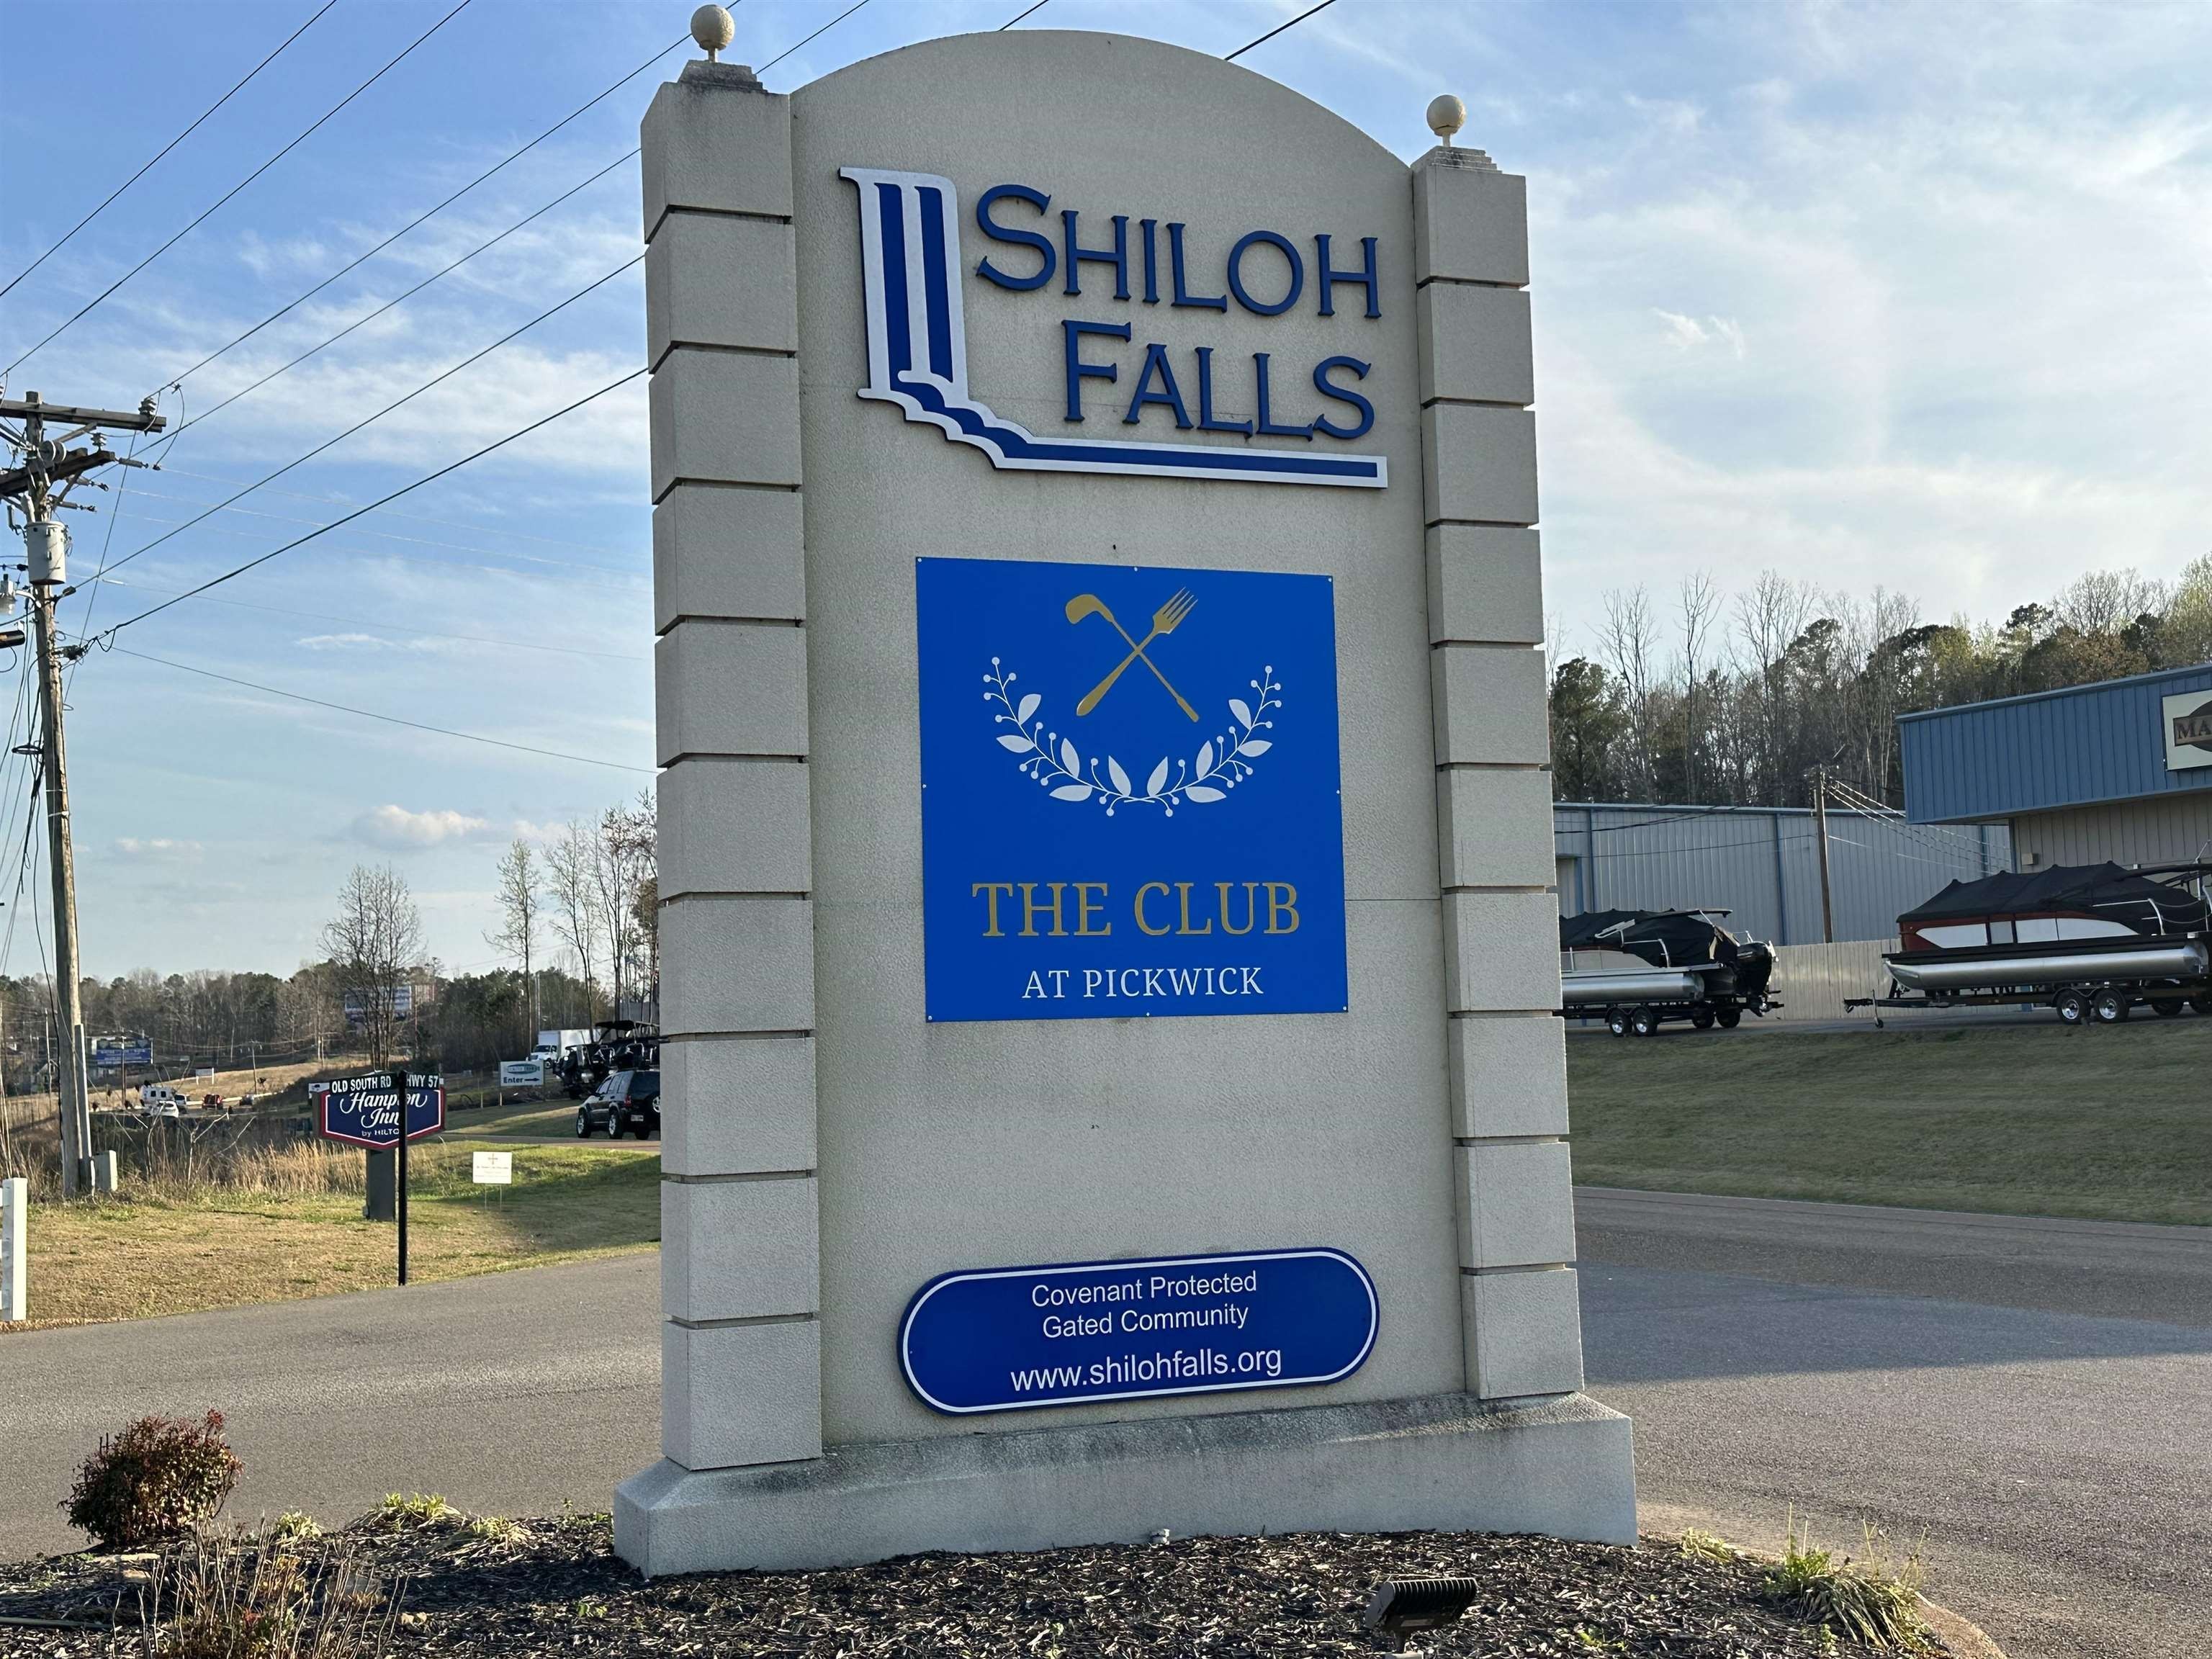 4. 0 Shiloh Falls